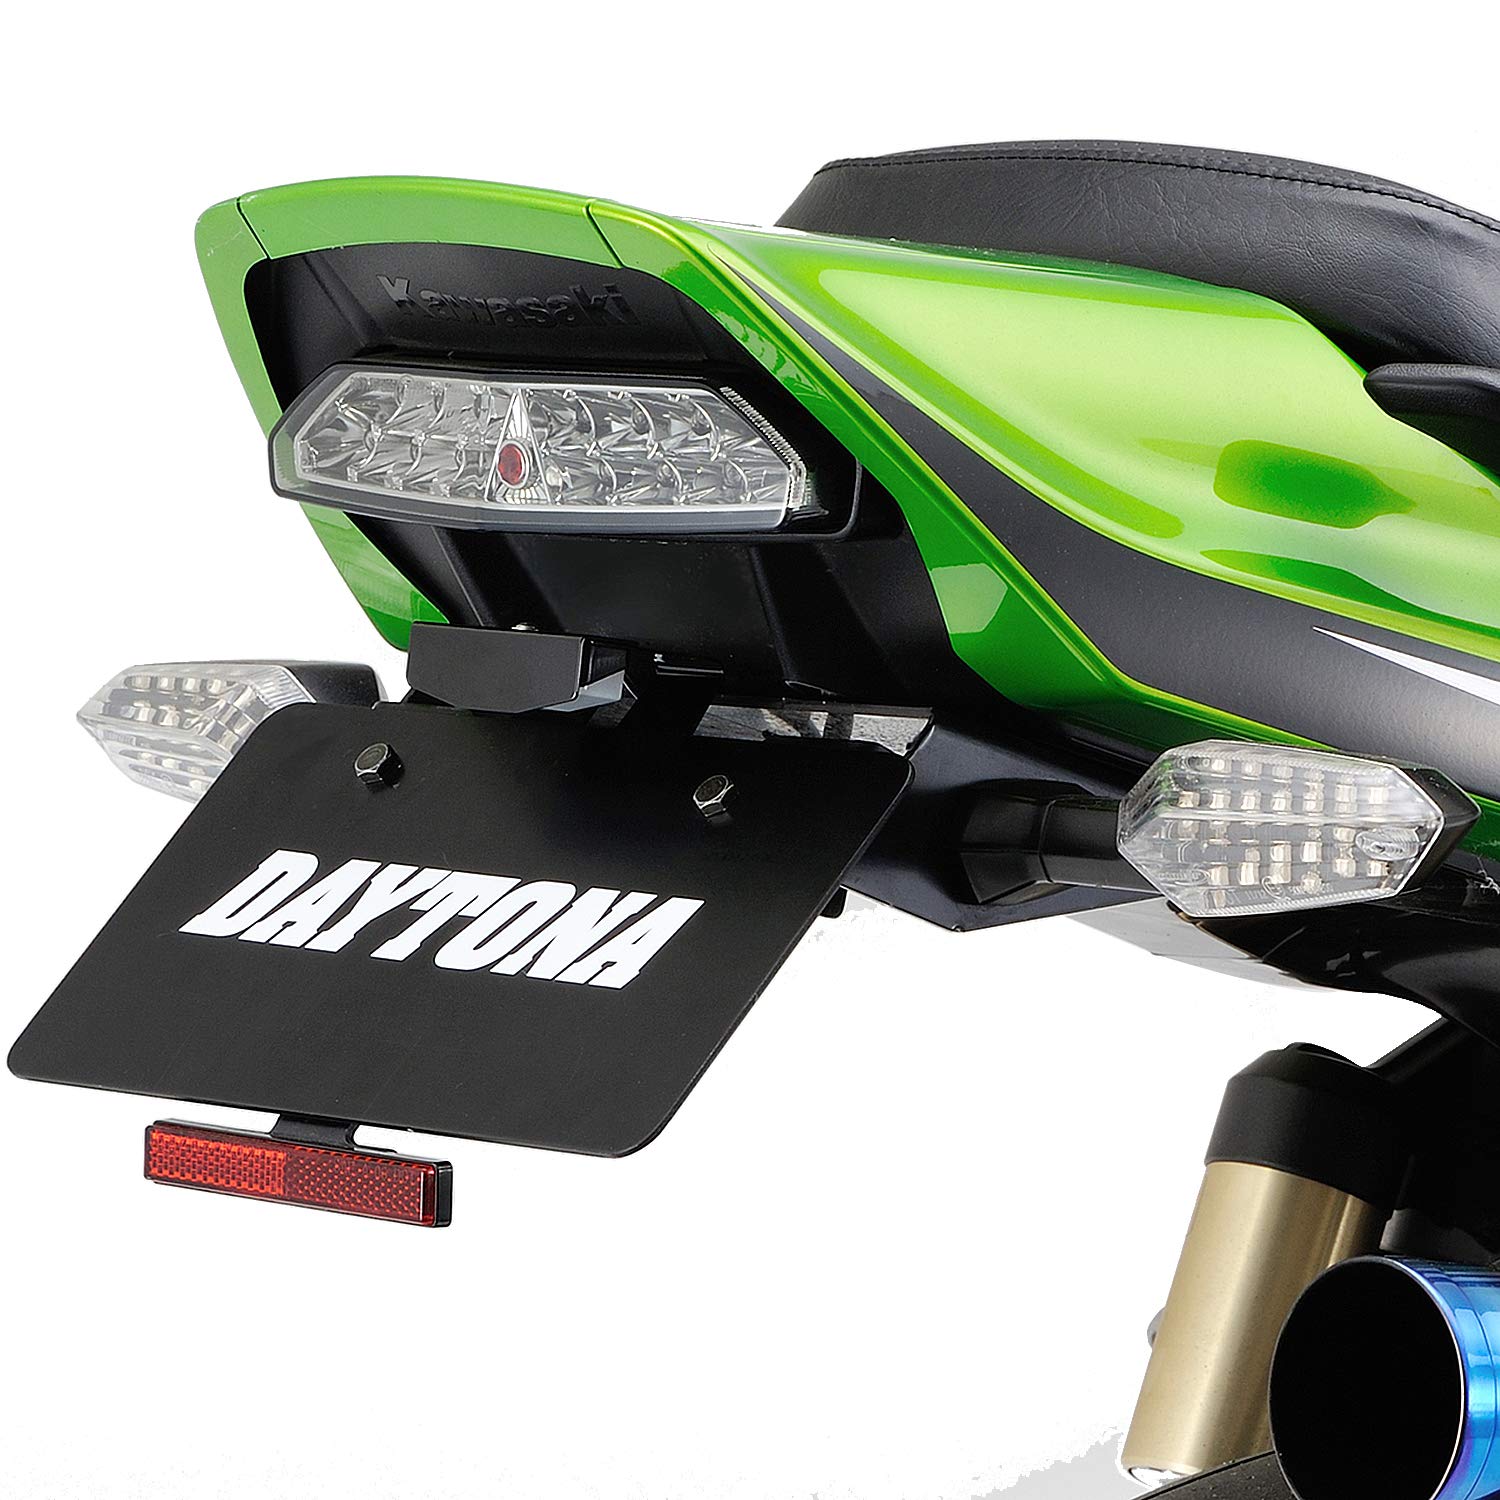 デイトナ(Daytona) バイク用 LED フェンダーレス キット ZRX1200DAEG (09-16) 97107